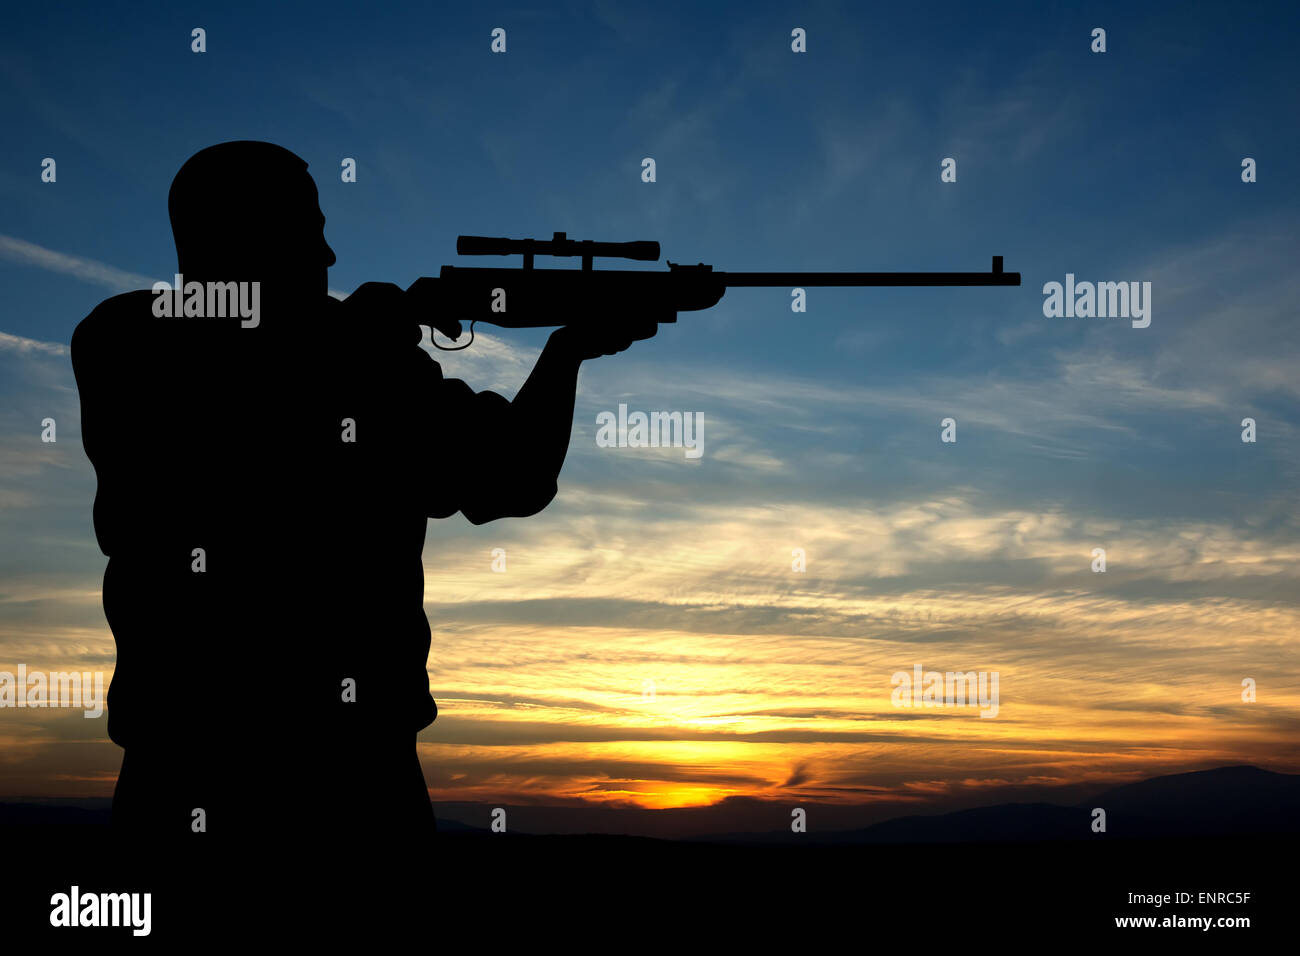 Abbildung der Jäger Silhouette auf Sonnenuntergang Hintergrund Stockfoto